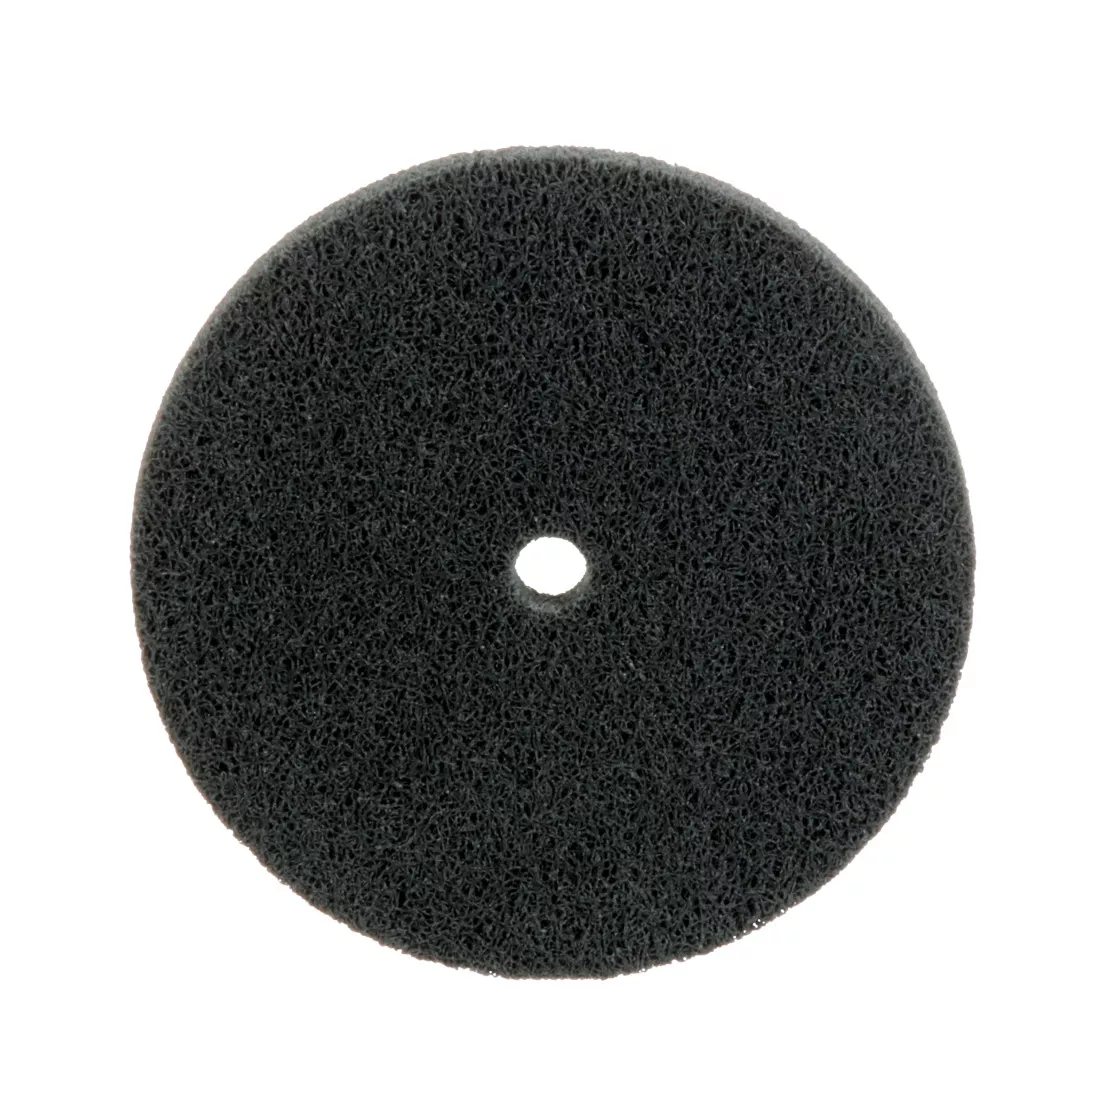 Standard Abrasives™ S/C Unitized Wheel 863235, 632 3 in x 1/4 in x 1/4
in, 10 ea/Case